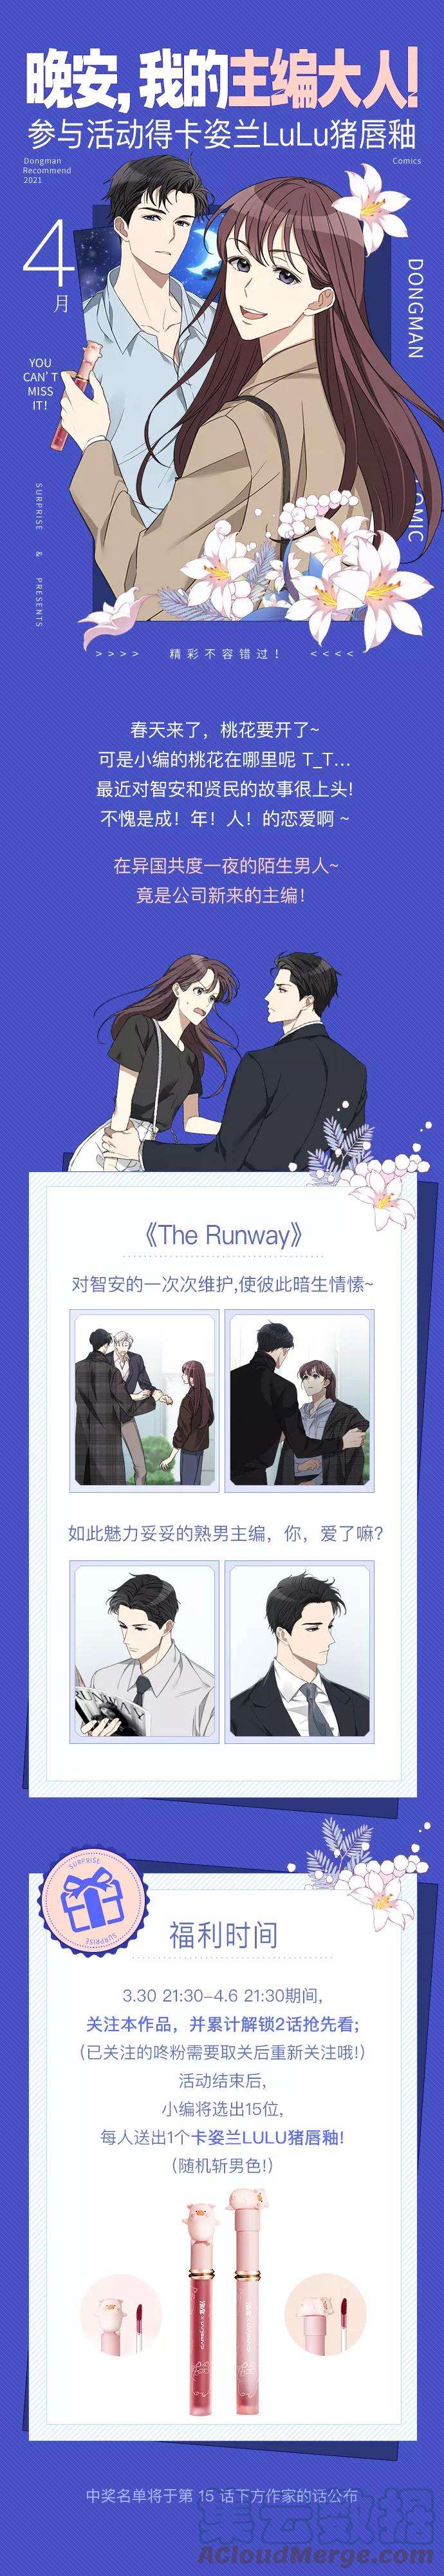 The Runway14话